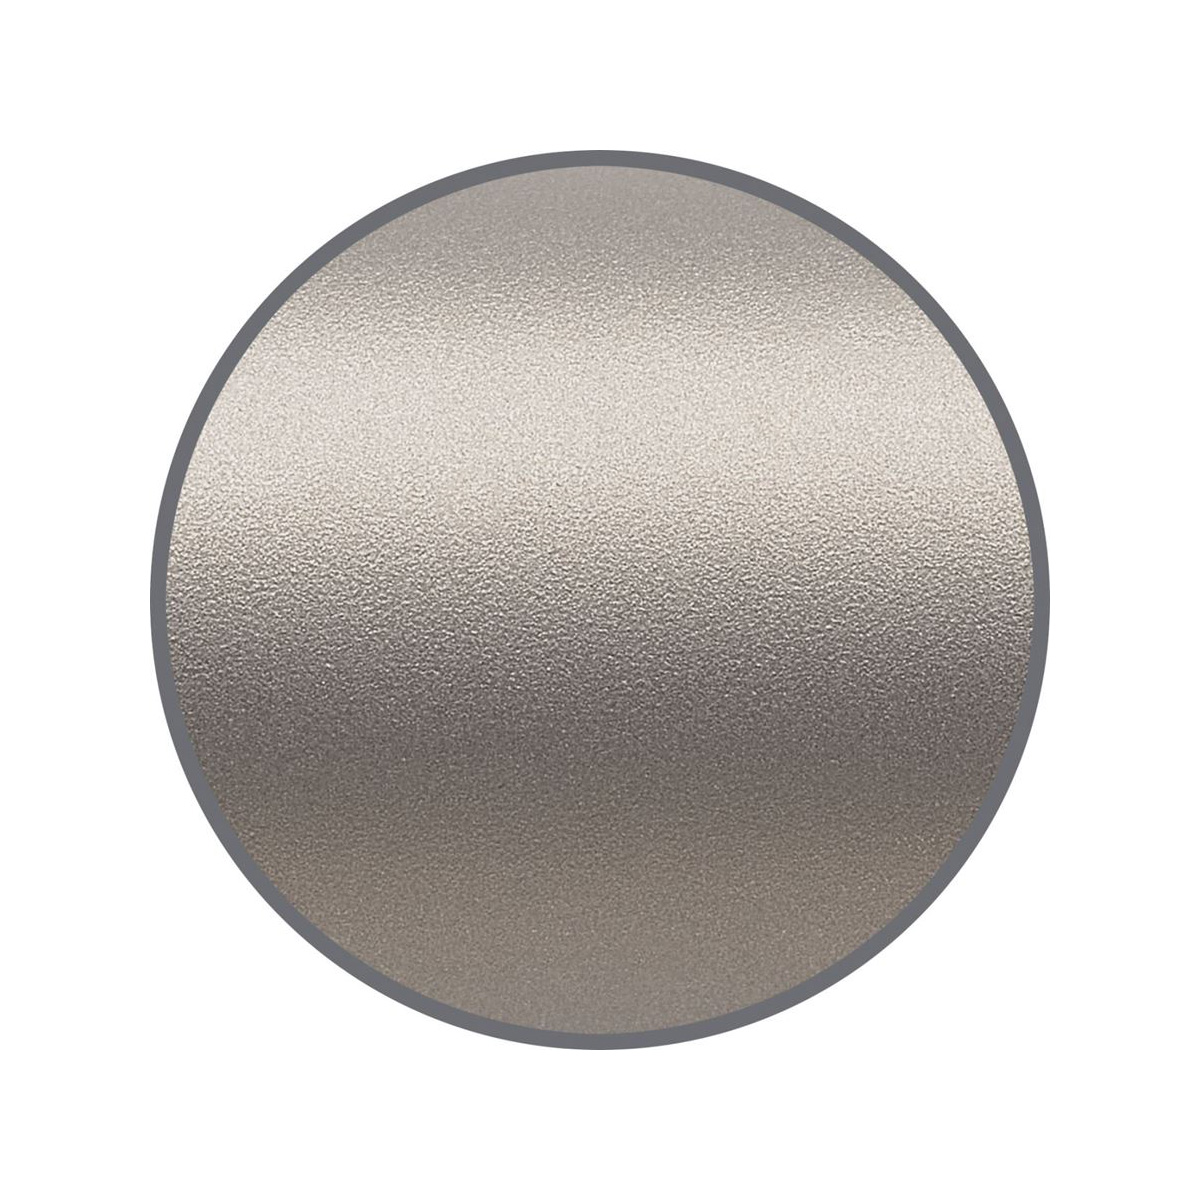 Faber Castell - Neo Slim - Rollerball Pen - Matt chromed steel